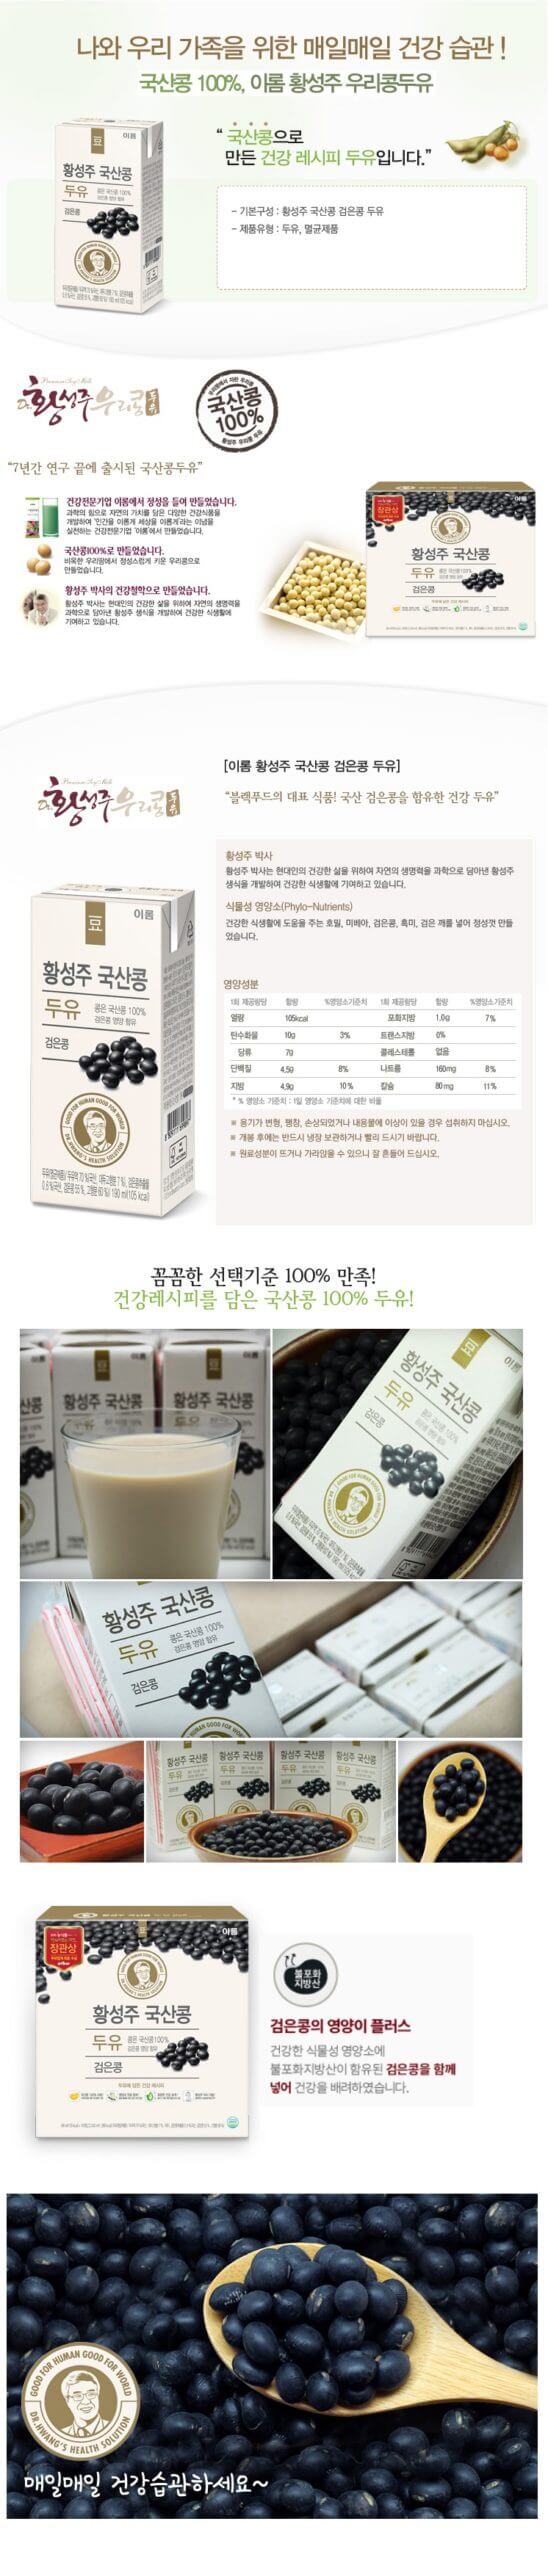 韓國食品-[이롬] 황성주 국산콩 두유 [검은콩] 190ml x 16